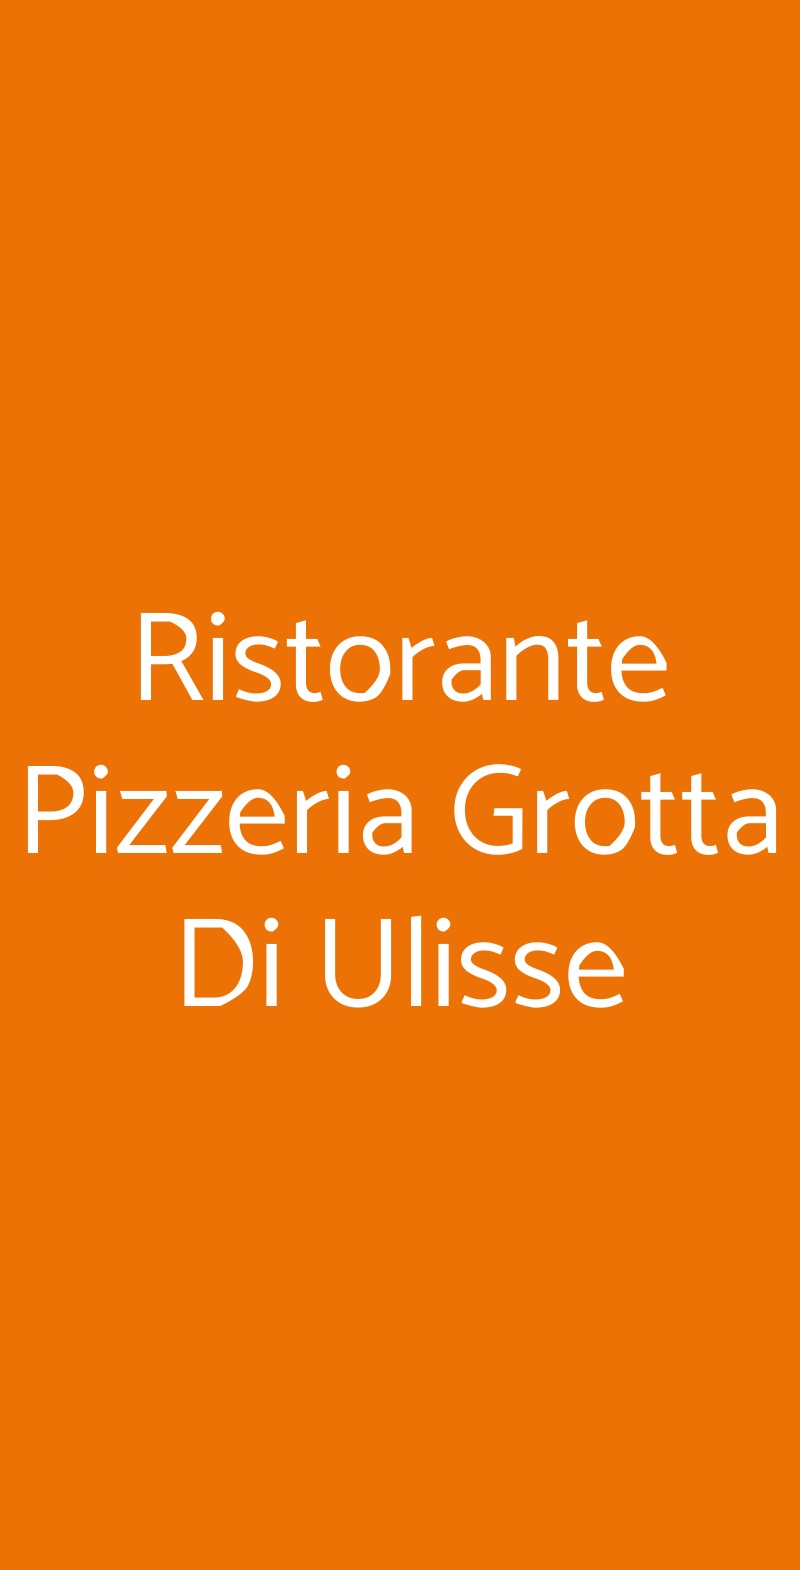 Ristorante Pizzeria Grotta Di Ulisse Taormina menù 1 pagina